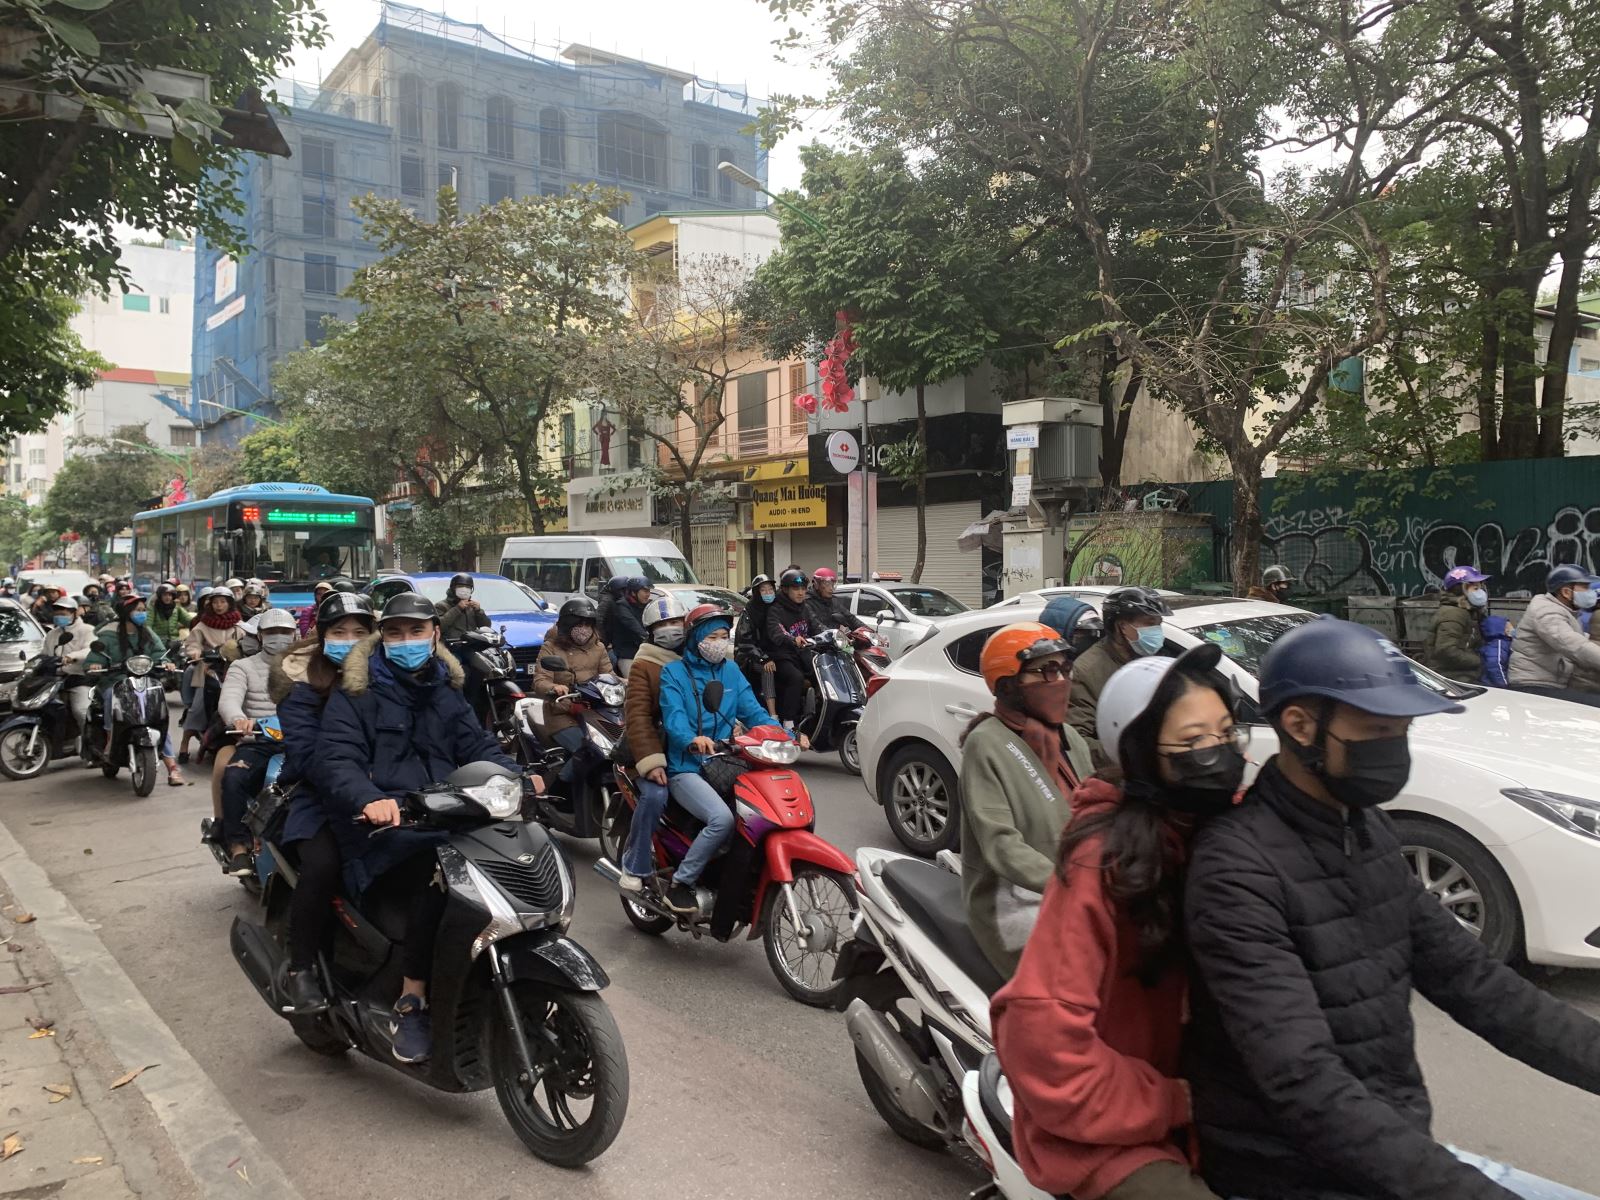 Hoạt động sau tết: Hãy khám phá những hoạt động đặc sắc sau Tết đang diễn ra trên khắp Hà Nội. Cùng nhau tìm hiểu và tham gia vào những hoạt động đặc trưng của Việt Nam để tận hưởng không khí đầm ấm của mùa xuân mới.